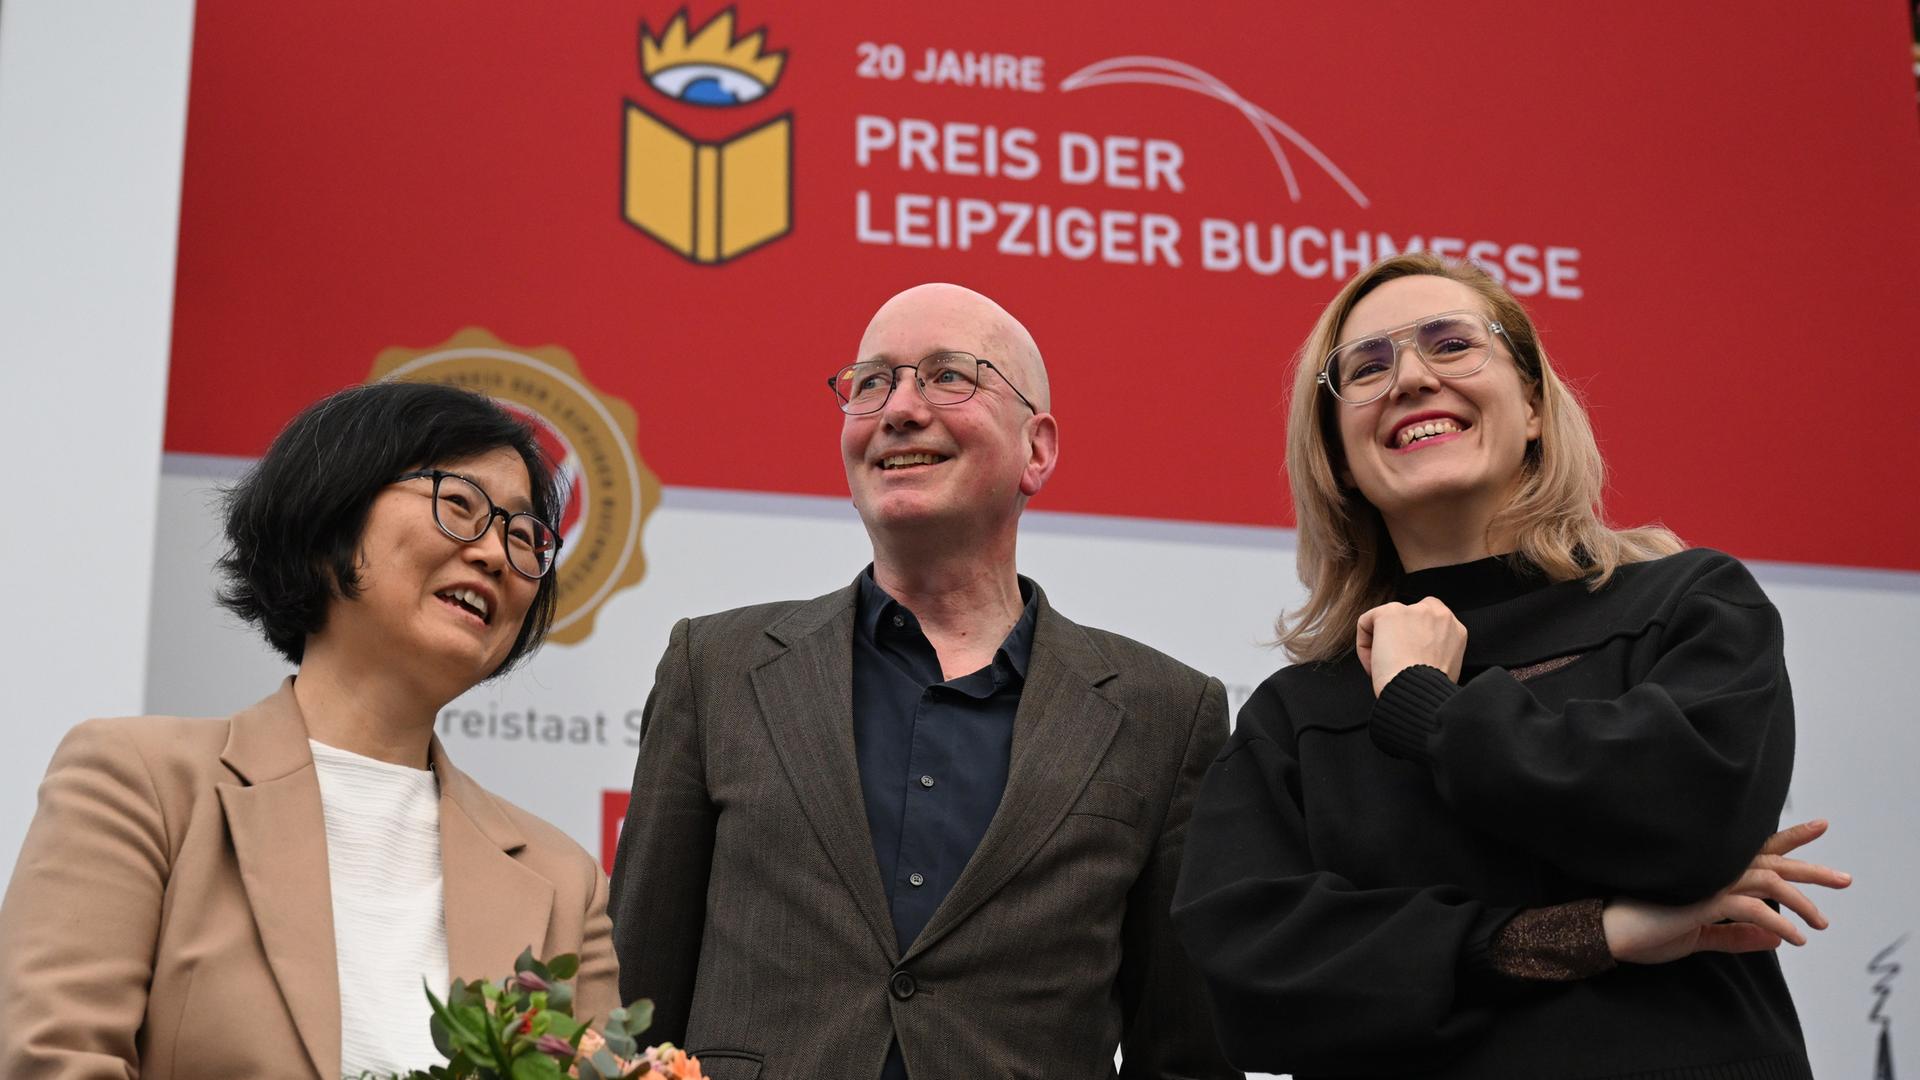 Die Preisträger der Leipziger Buchmesse Ki-Hyang Lee (li), Tom Holert und Barbi Marković stehen auf einer Bühne